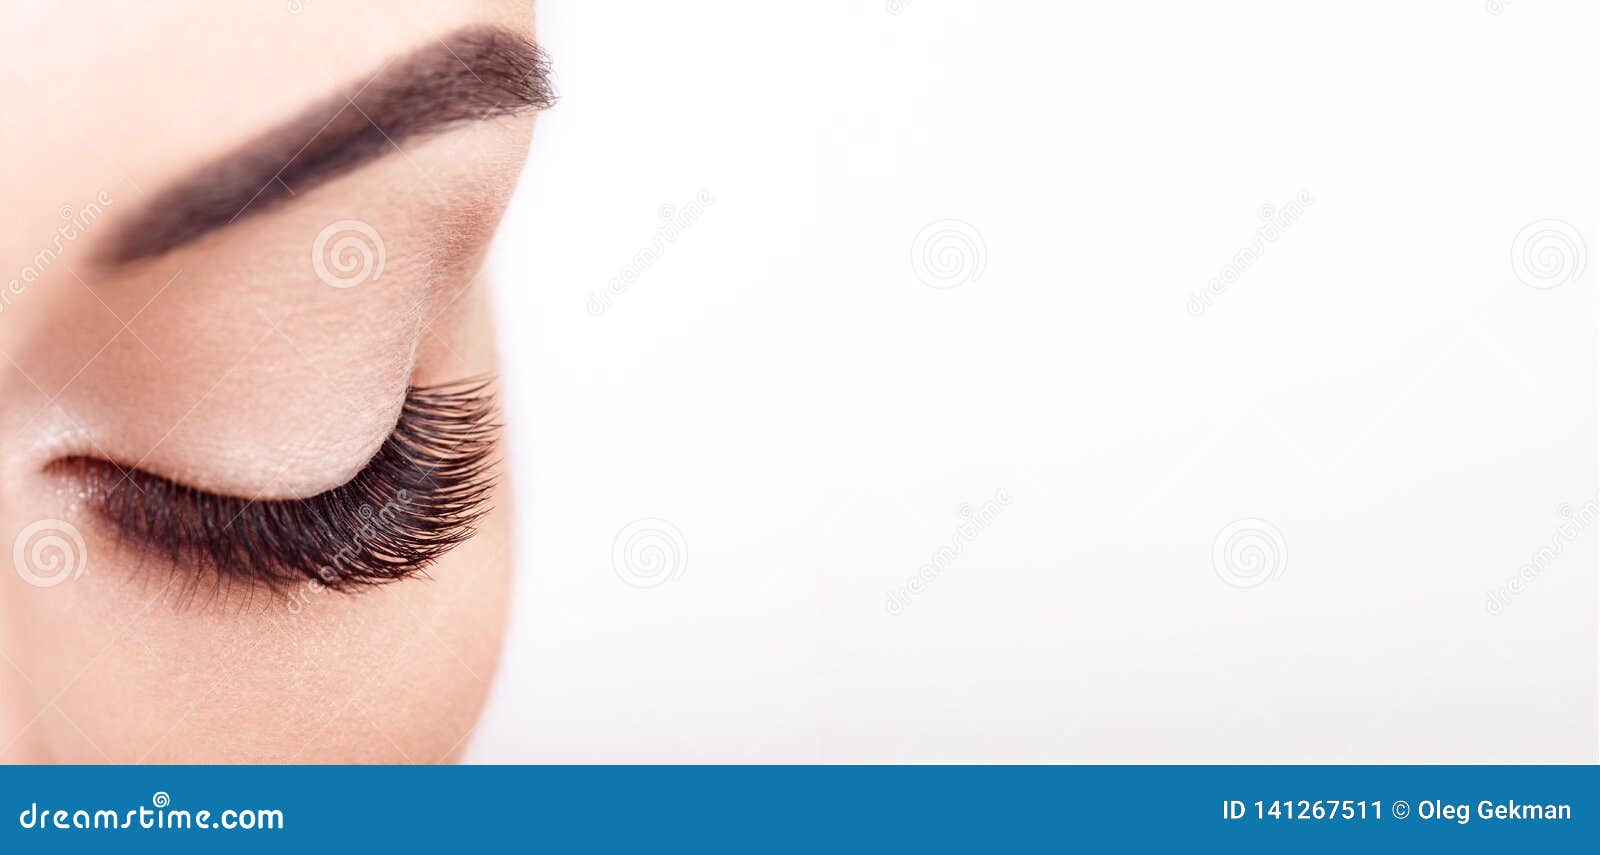 female eye with long false eyelashes